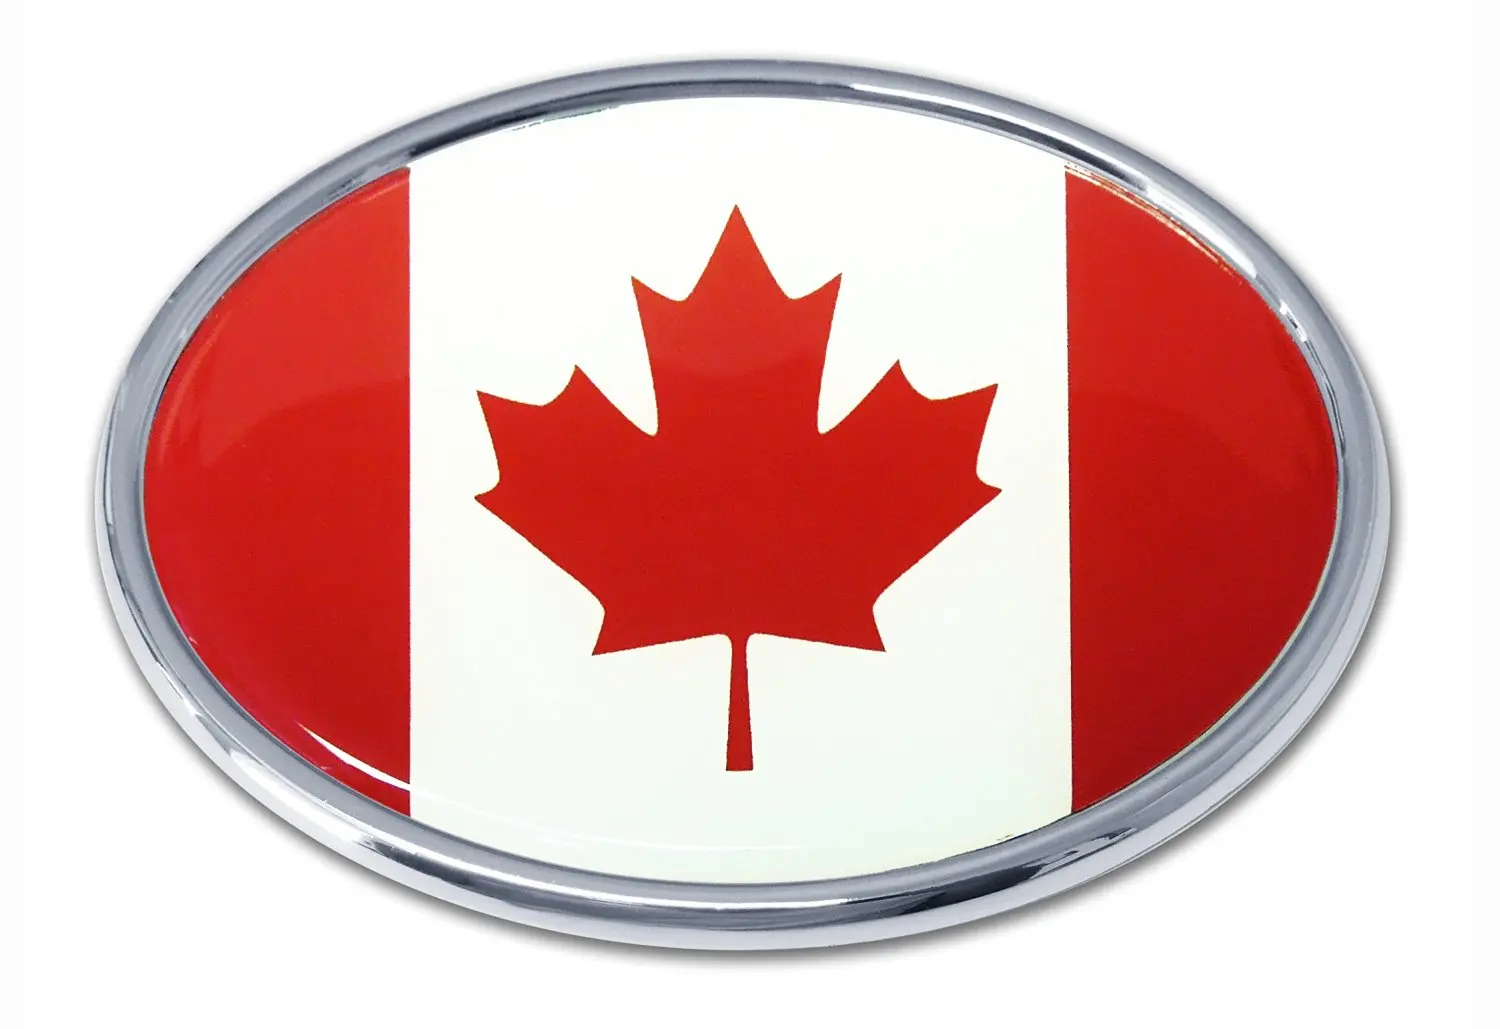 Part canada. Значок машины в форме звезды. Логотип машины елочка. Канада Emblems. Автомобильный флаг Канады.